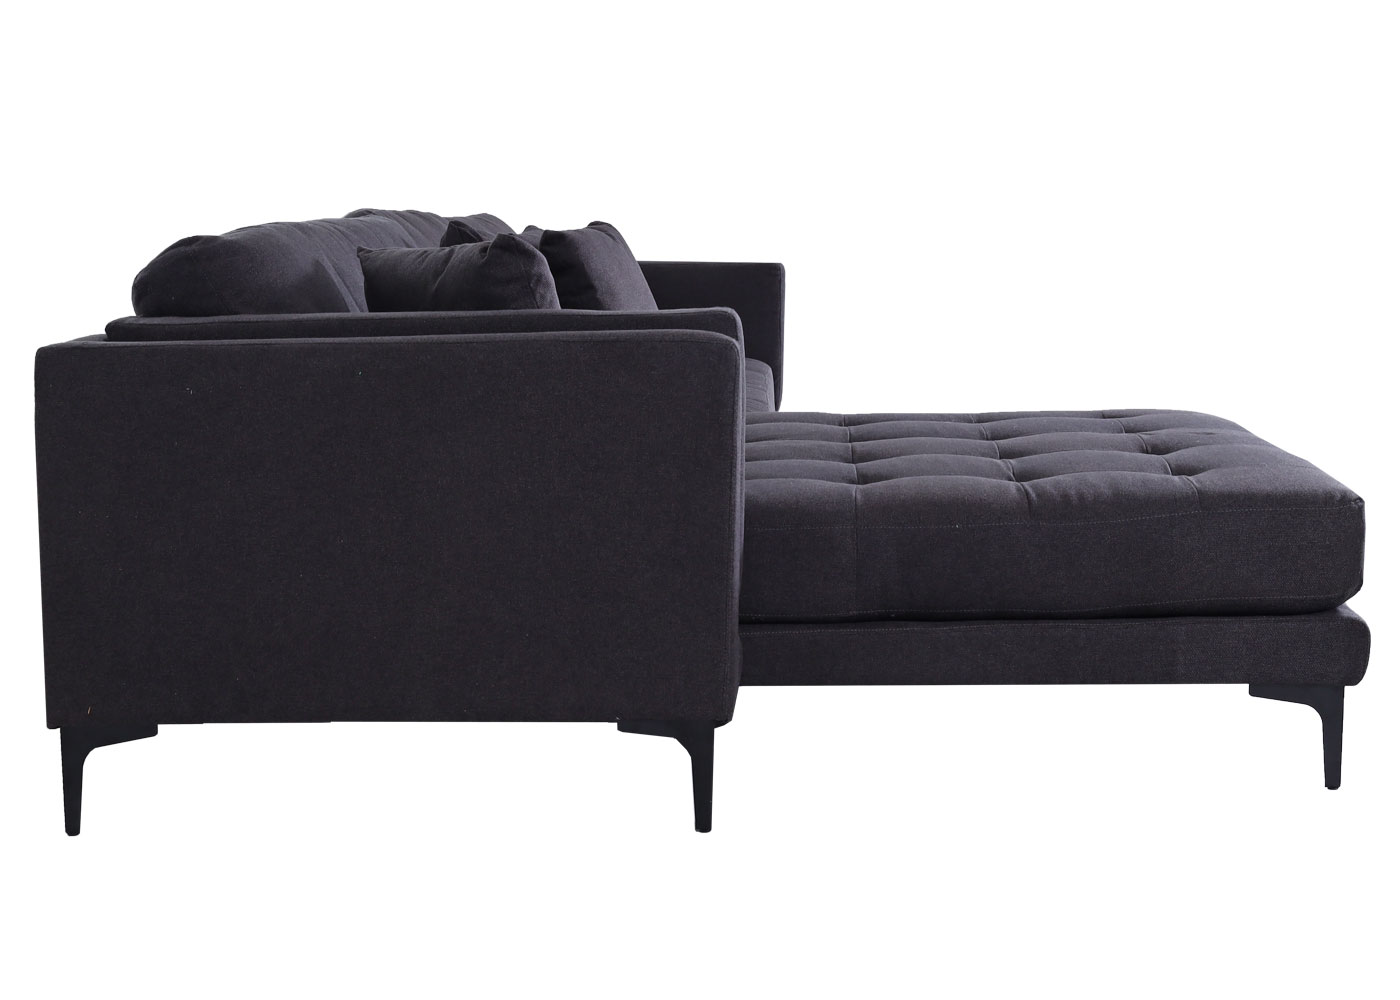 Sofa-Garnitur HWC-M27, Seitliche Ansicht